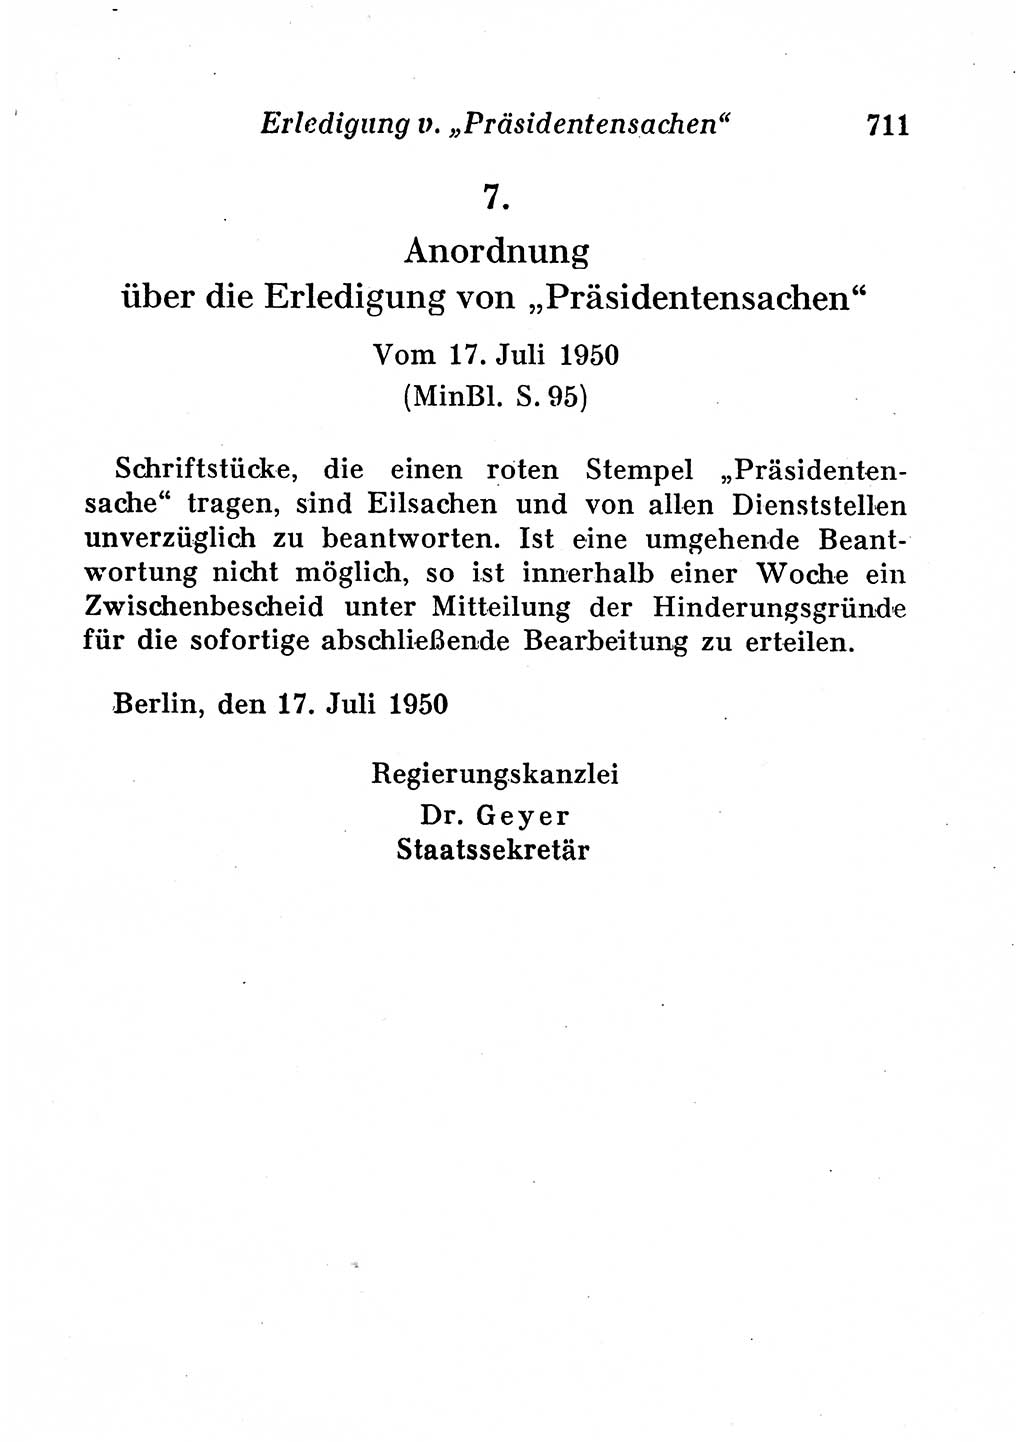 Staats- und verwaltungsrechtliche Gesetze der Deutschen Demokratischen Republik (DDR) 1958, Seite 711 (StVerwR Ges. DDR 1958, S. 711)